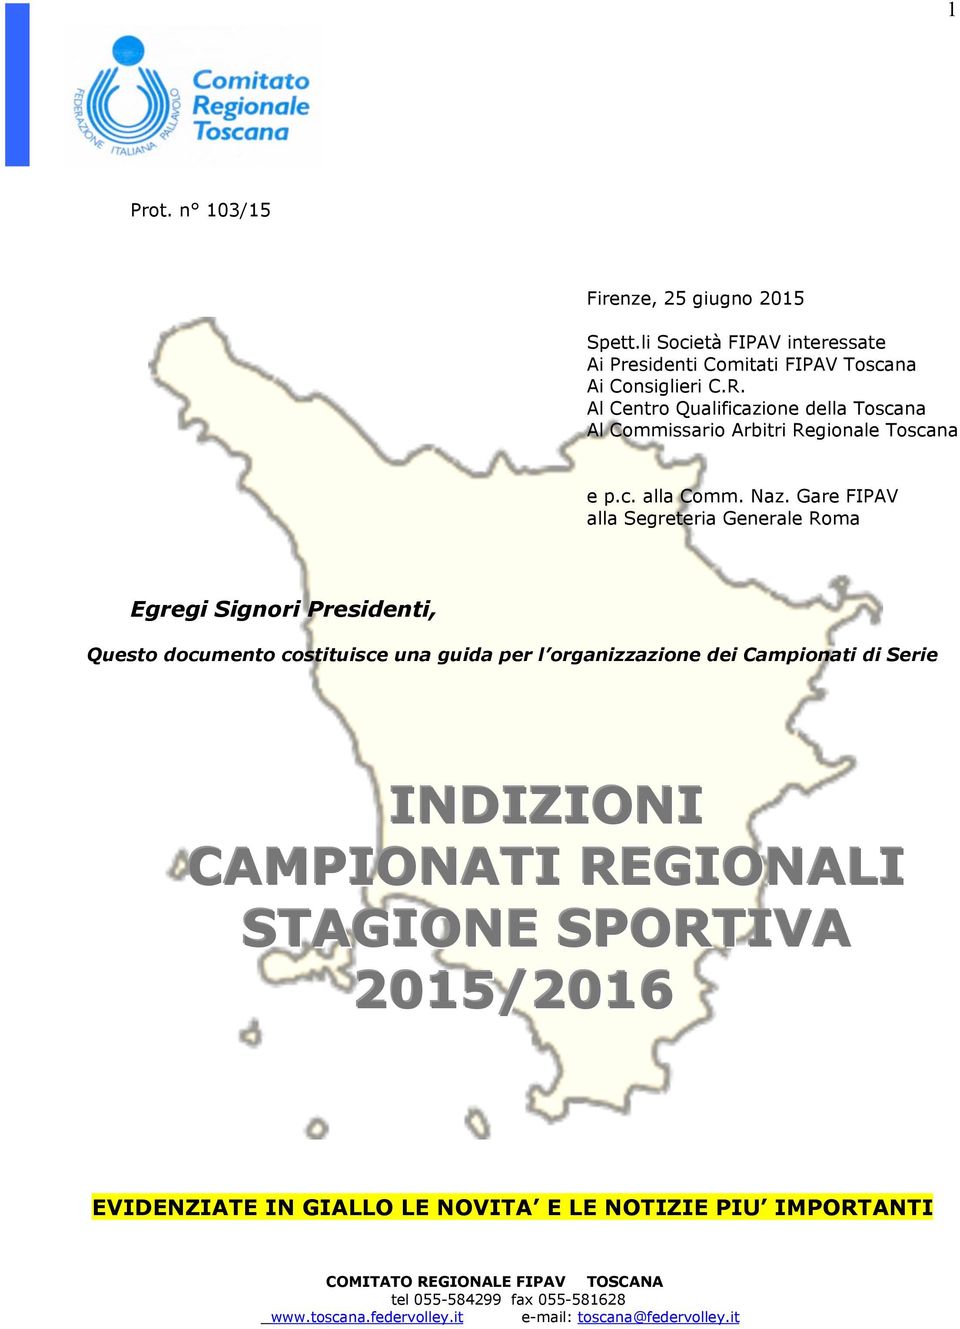 Gare FIPAV alla Segreteria Generale Roma Egregi Signori Presidenti, Questo documento costituisce una guida per l organizzazione dei Campionati di Serie